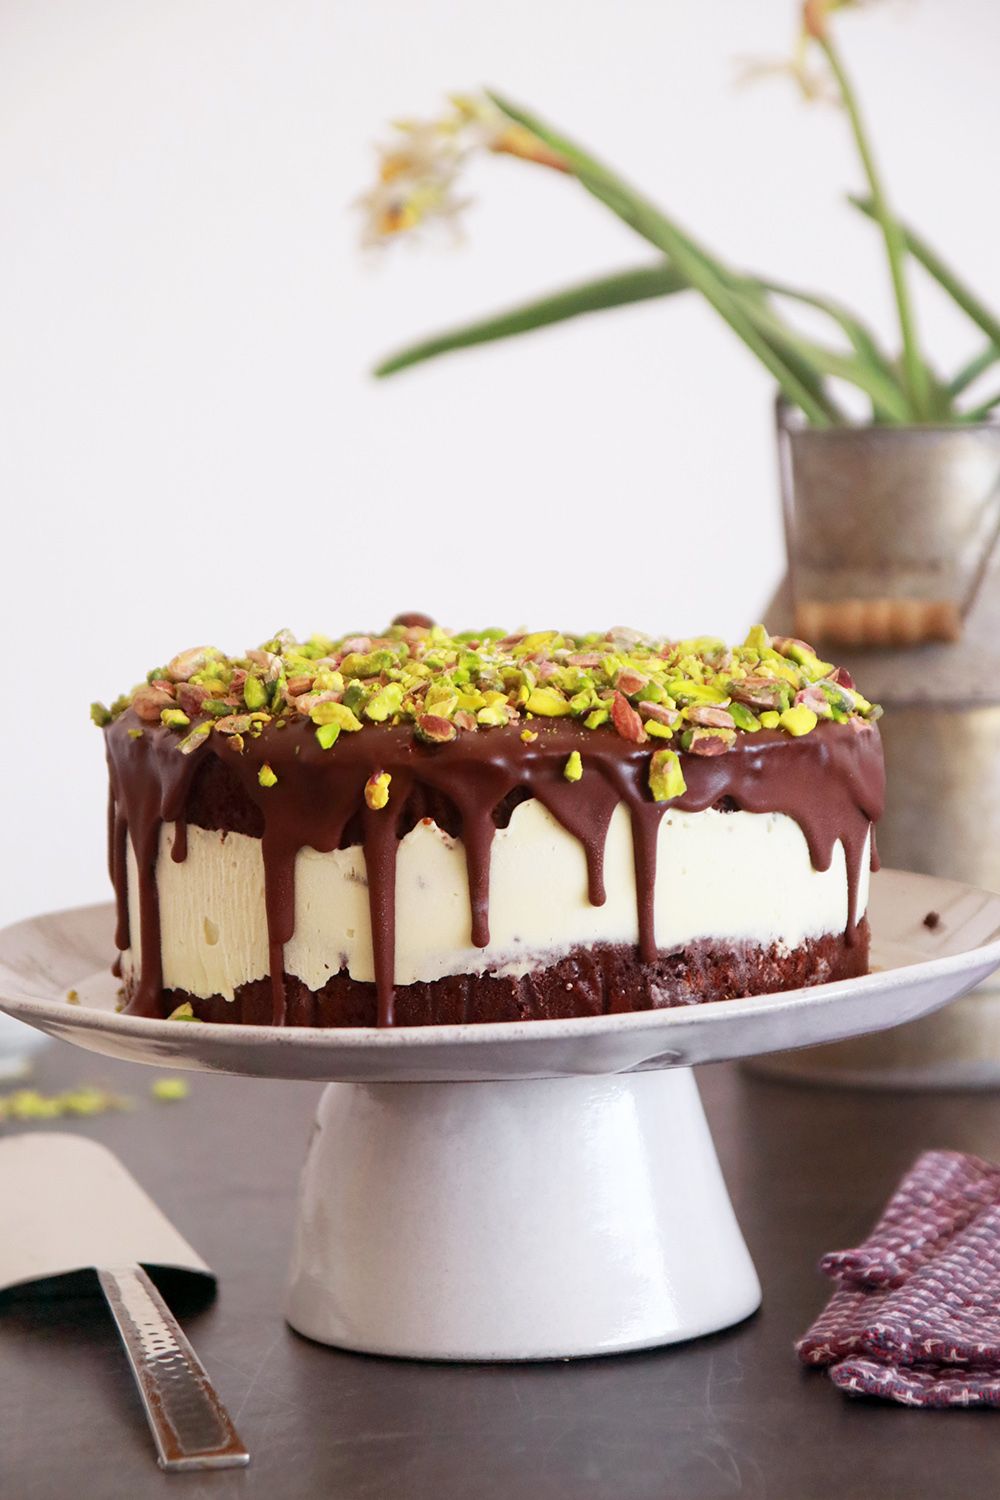 עוגת שוקולד במילוי קרם פיסטוק | צילום: נטלי לוין